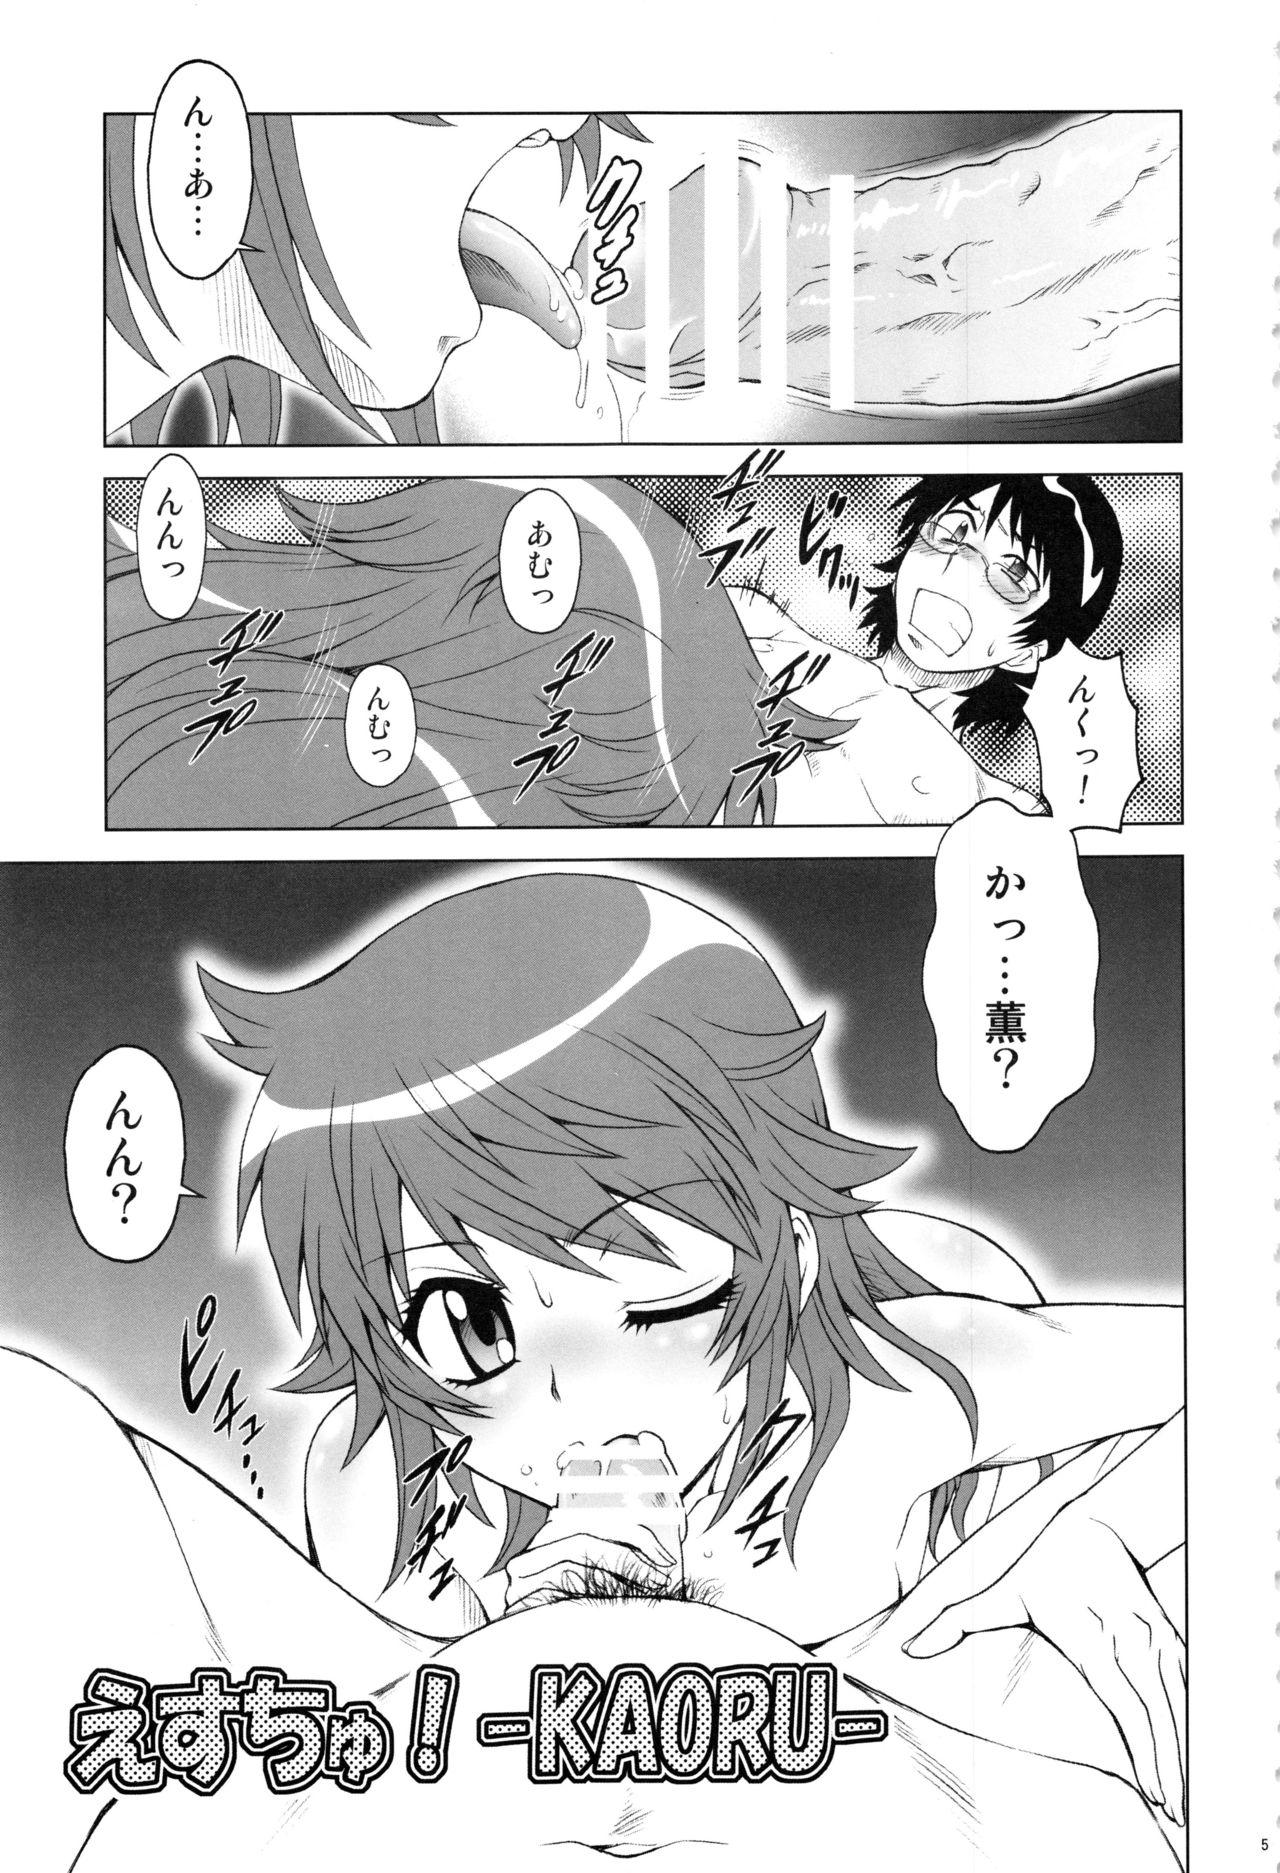 Punishment Esuchu! Hitomatome Soushuuhen 6 - Zettai karen children Celebrity Sex Scene - Page 4